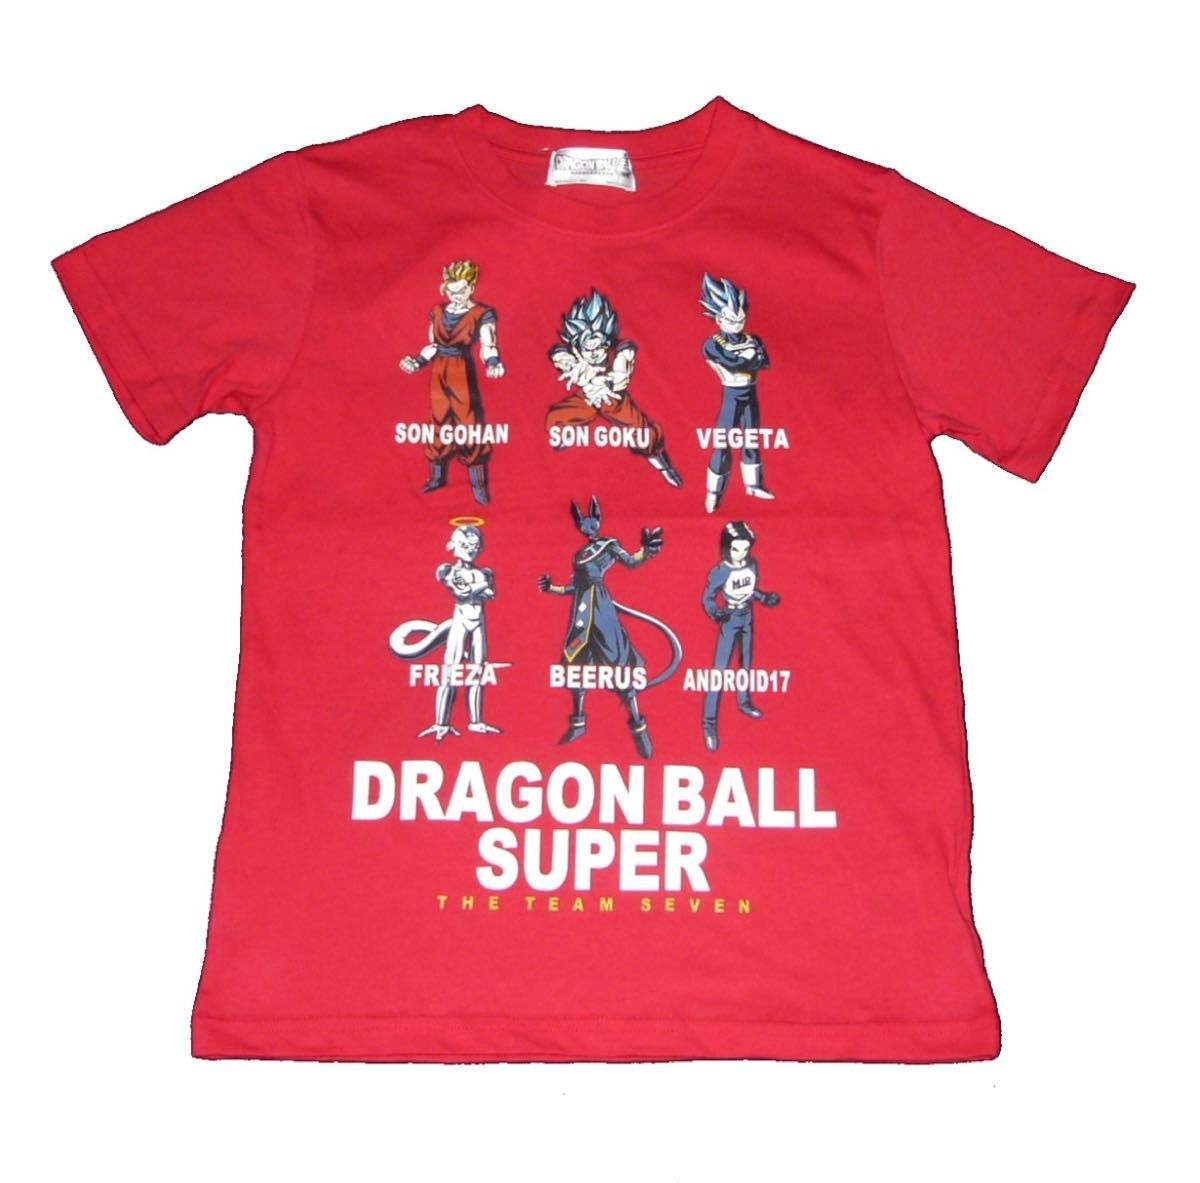 ドラゴンボール超 Tシャツ カットソー 半袖 悟空 悟飯 ベジータ 人造人間17号 フリーザ ビルス レッド 150cm 子供